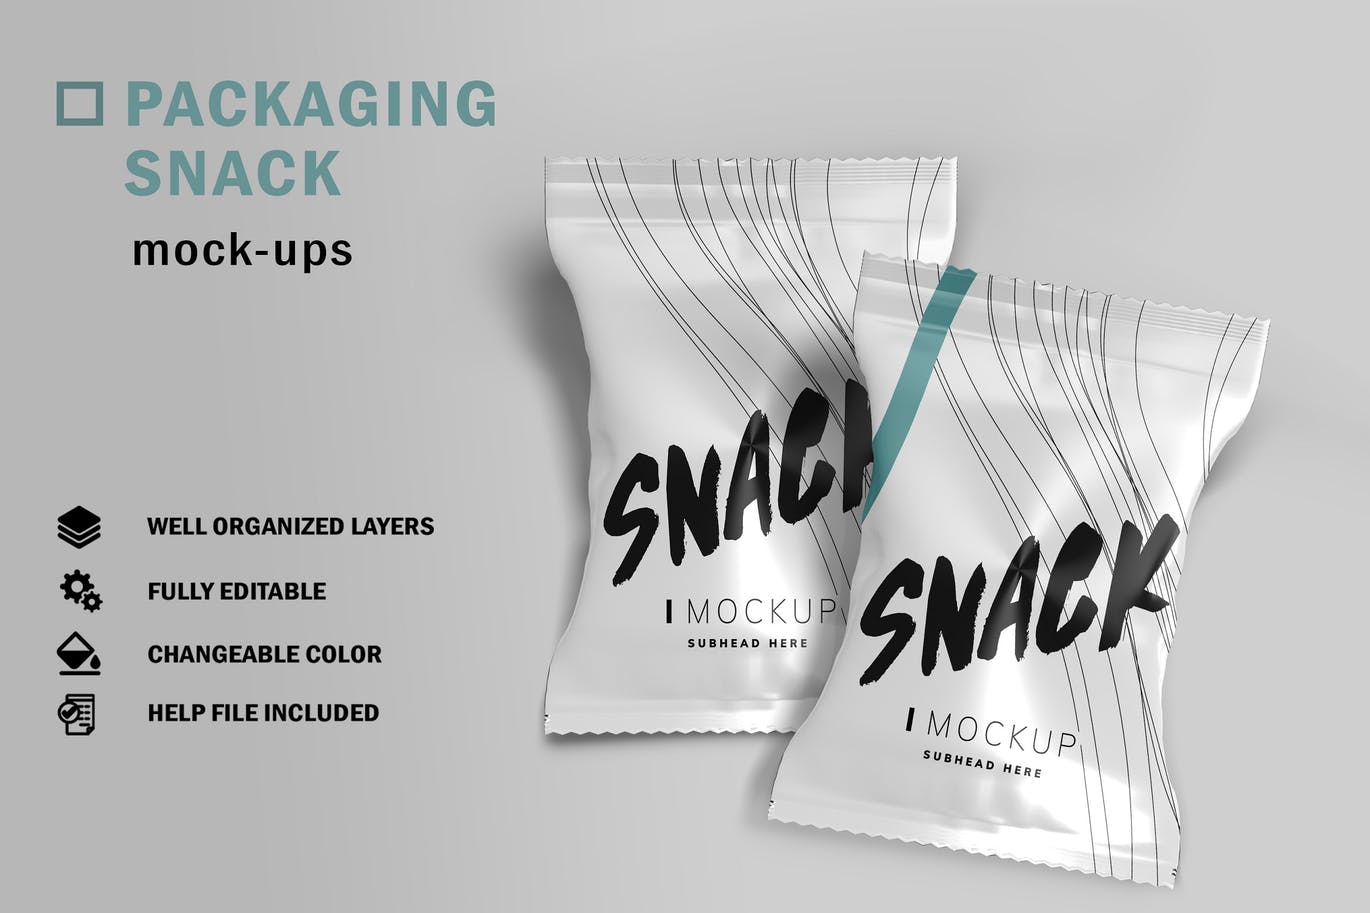 零食铝箔包装袋设计样机模板v1 Packaging Snack Mockup V.1设计素材模板